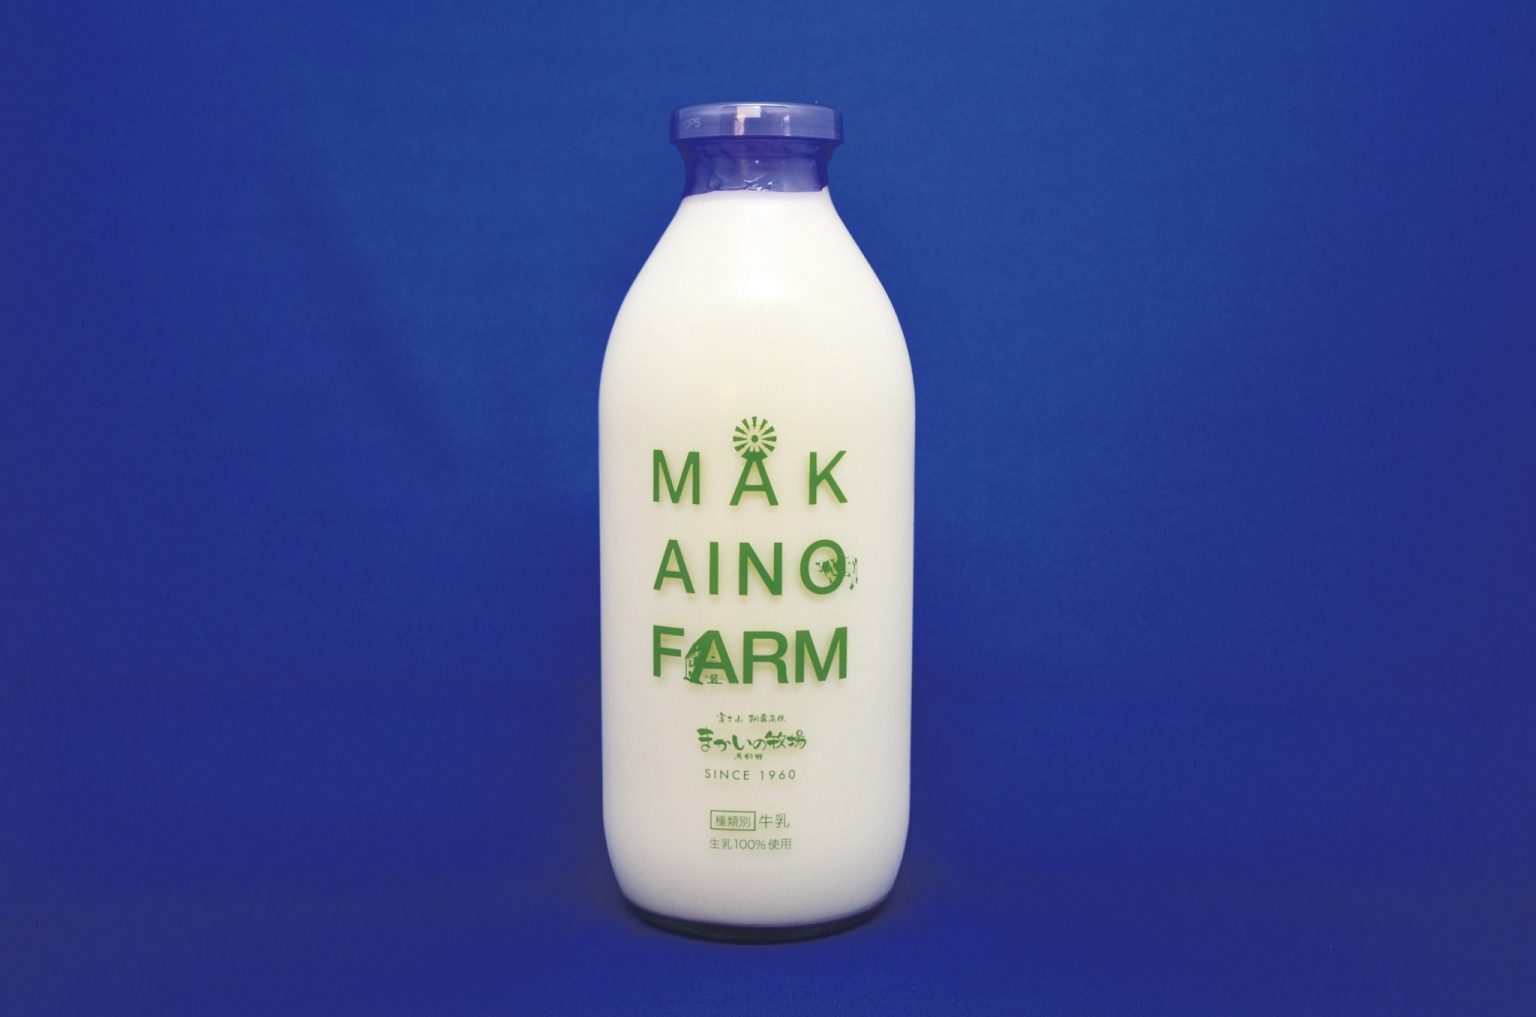 関東を代表するハイクオリティな牛乳をお土産に。900ml550円。